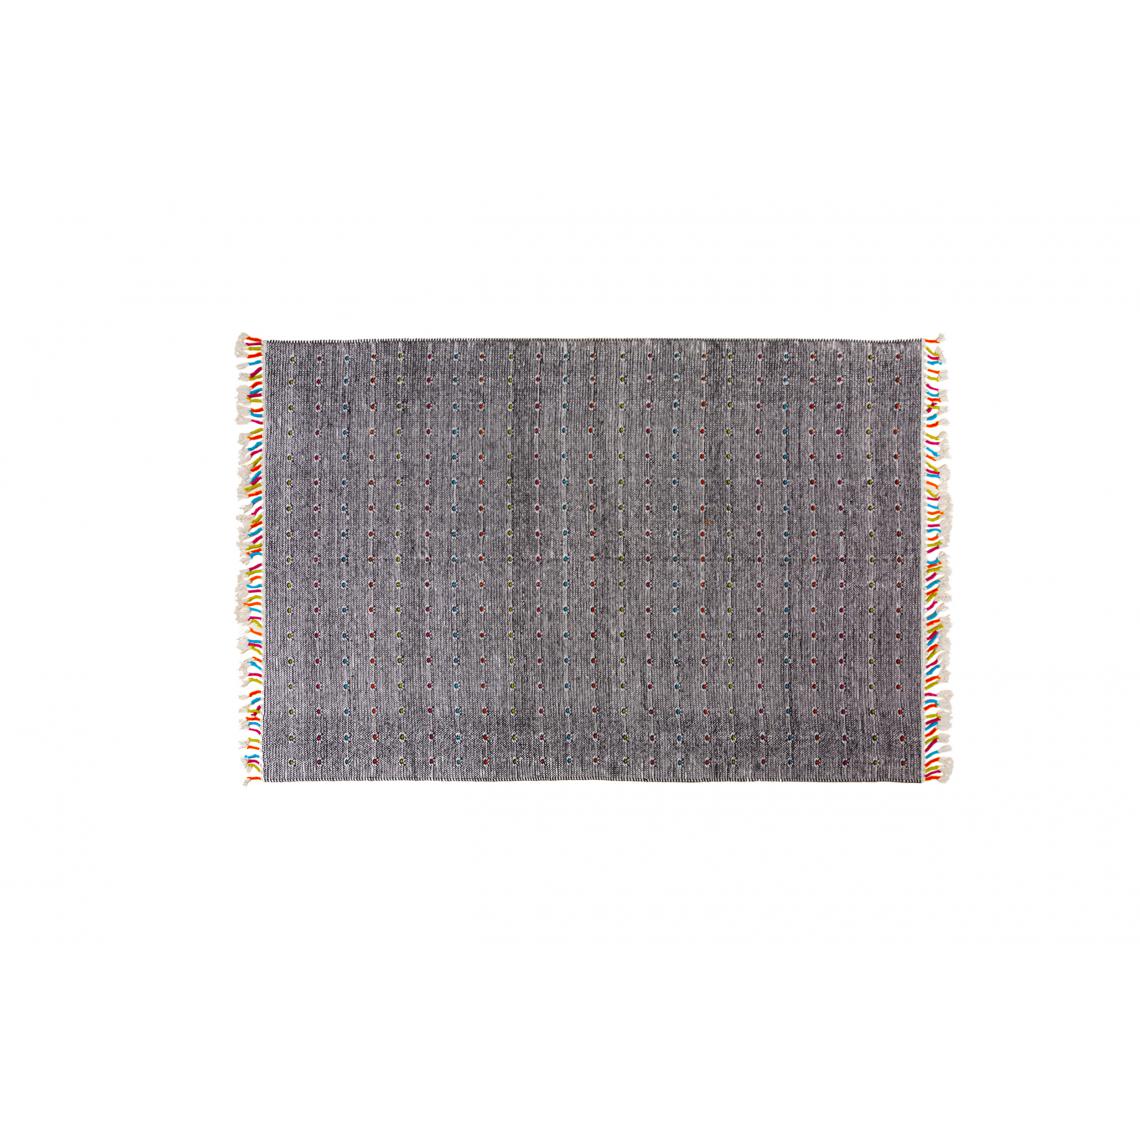 Alter - Tapis Texas moderne, style kilim, 100% coton, noir, 170x110cm - Tapis